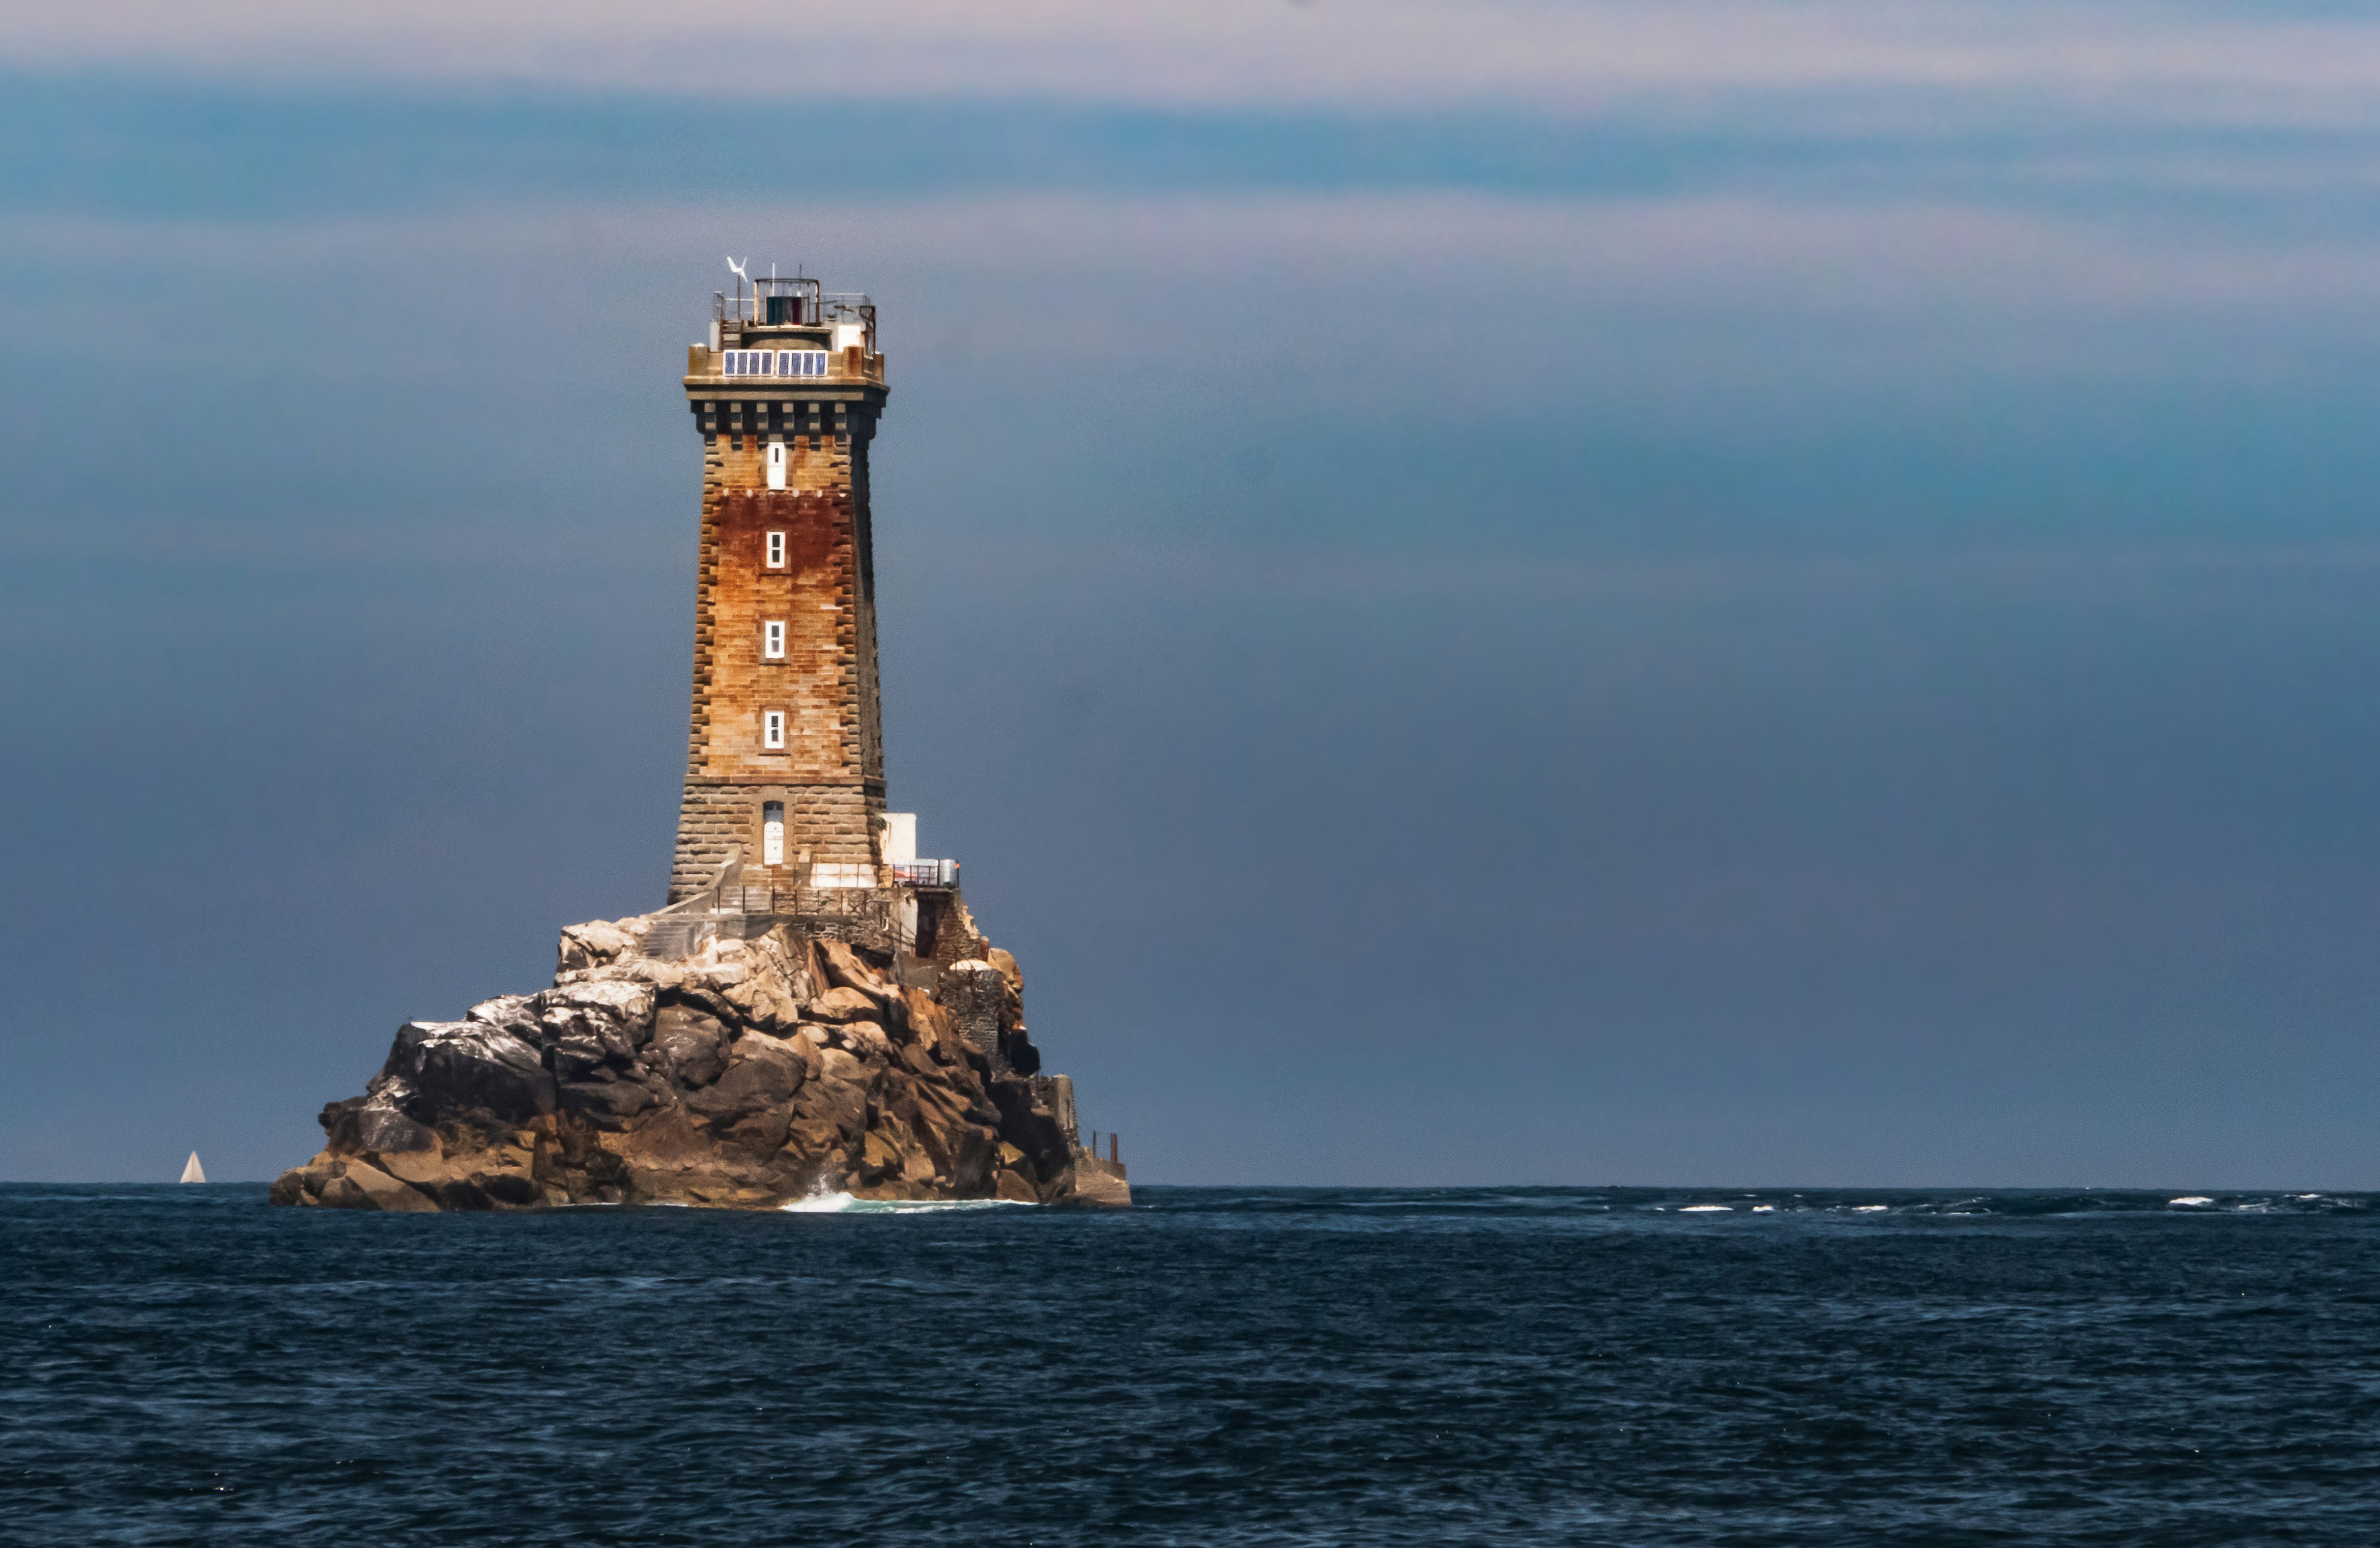 Phare de la vielle au calme : Lighthouse from Raz de sein, in a day unusualy quiet and calm.